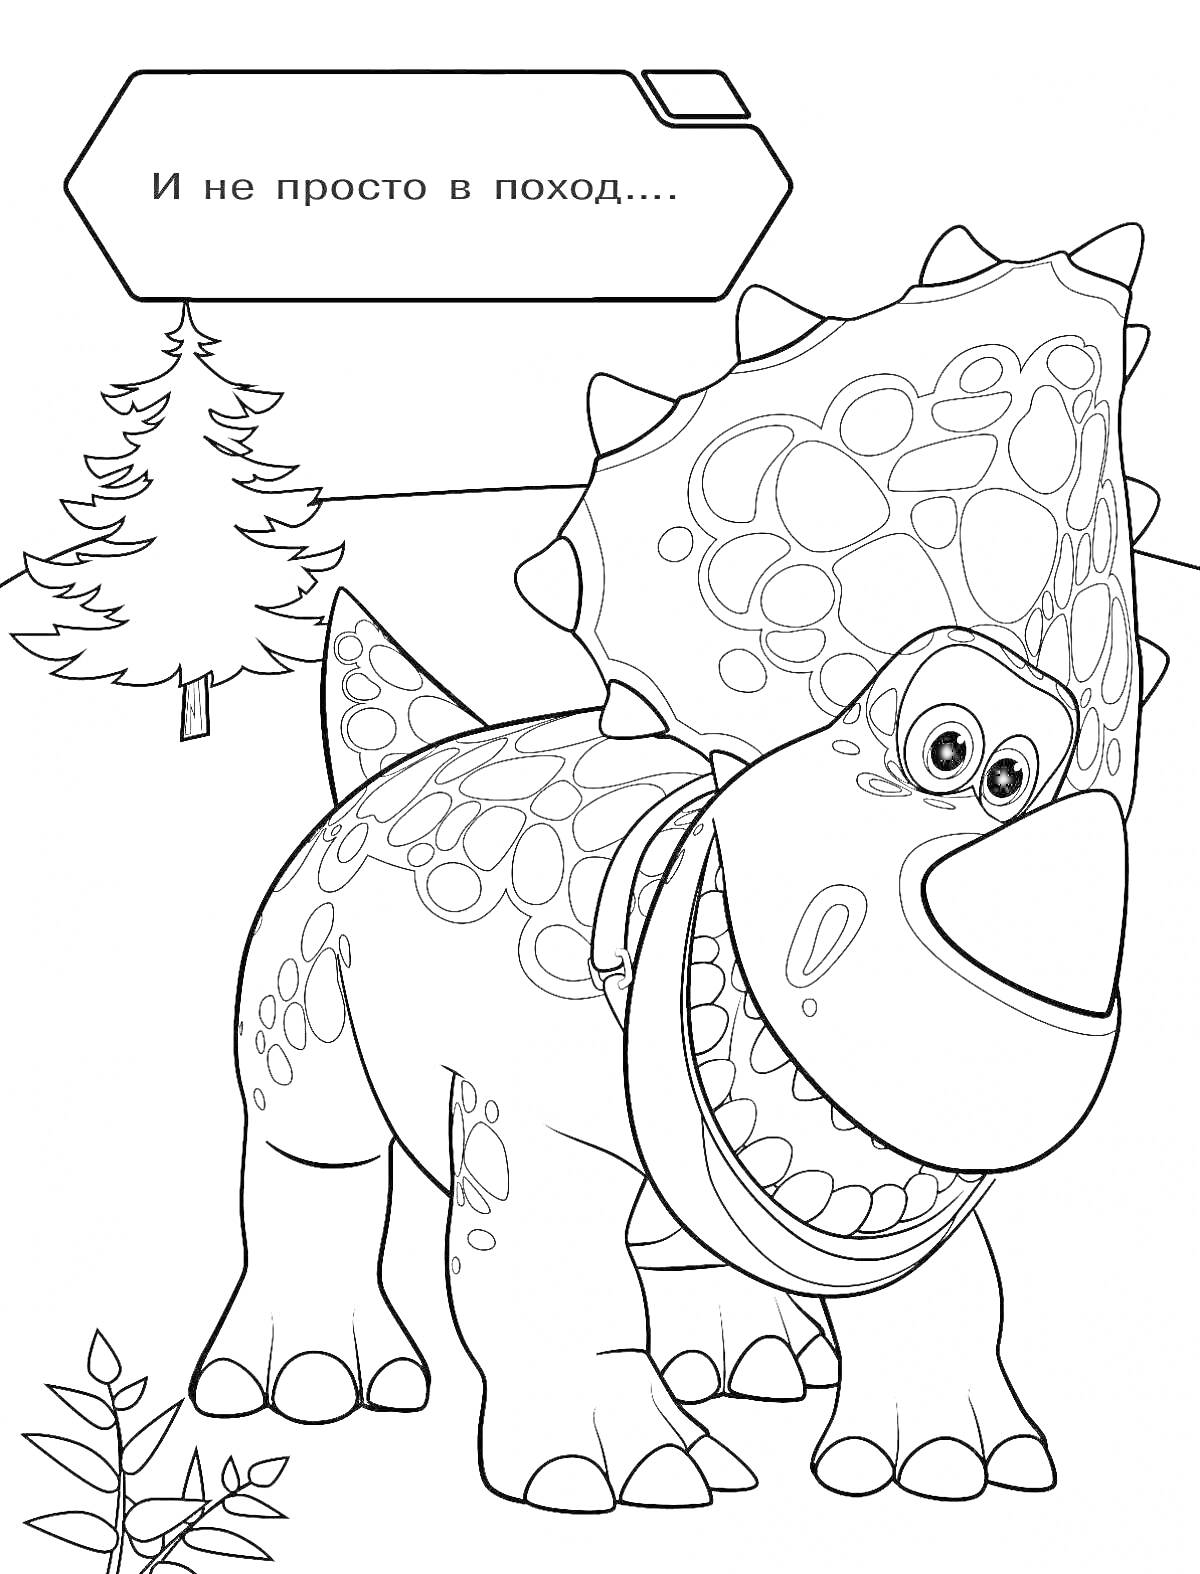 Раскраска Турбозавр с хвостом и большими глазами, дерево, трава, надпись 